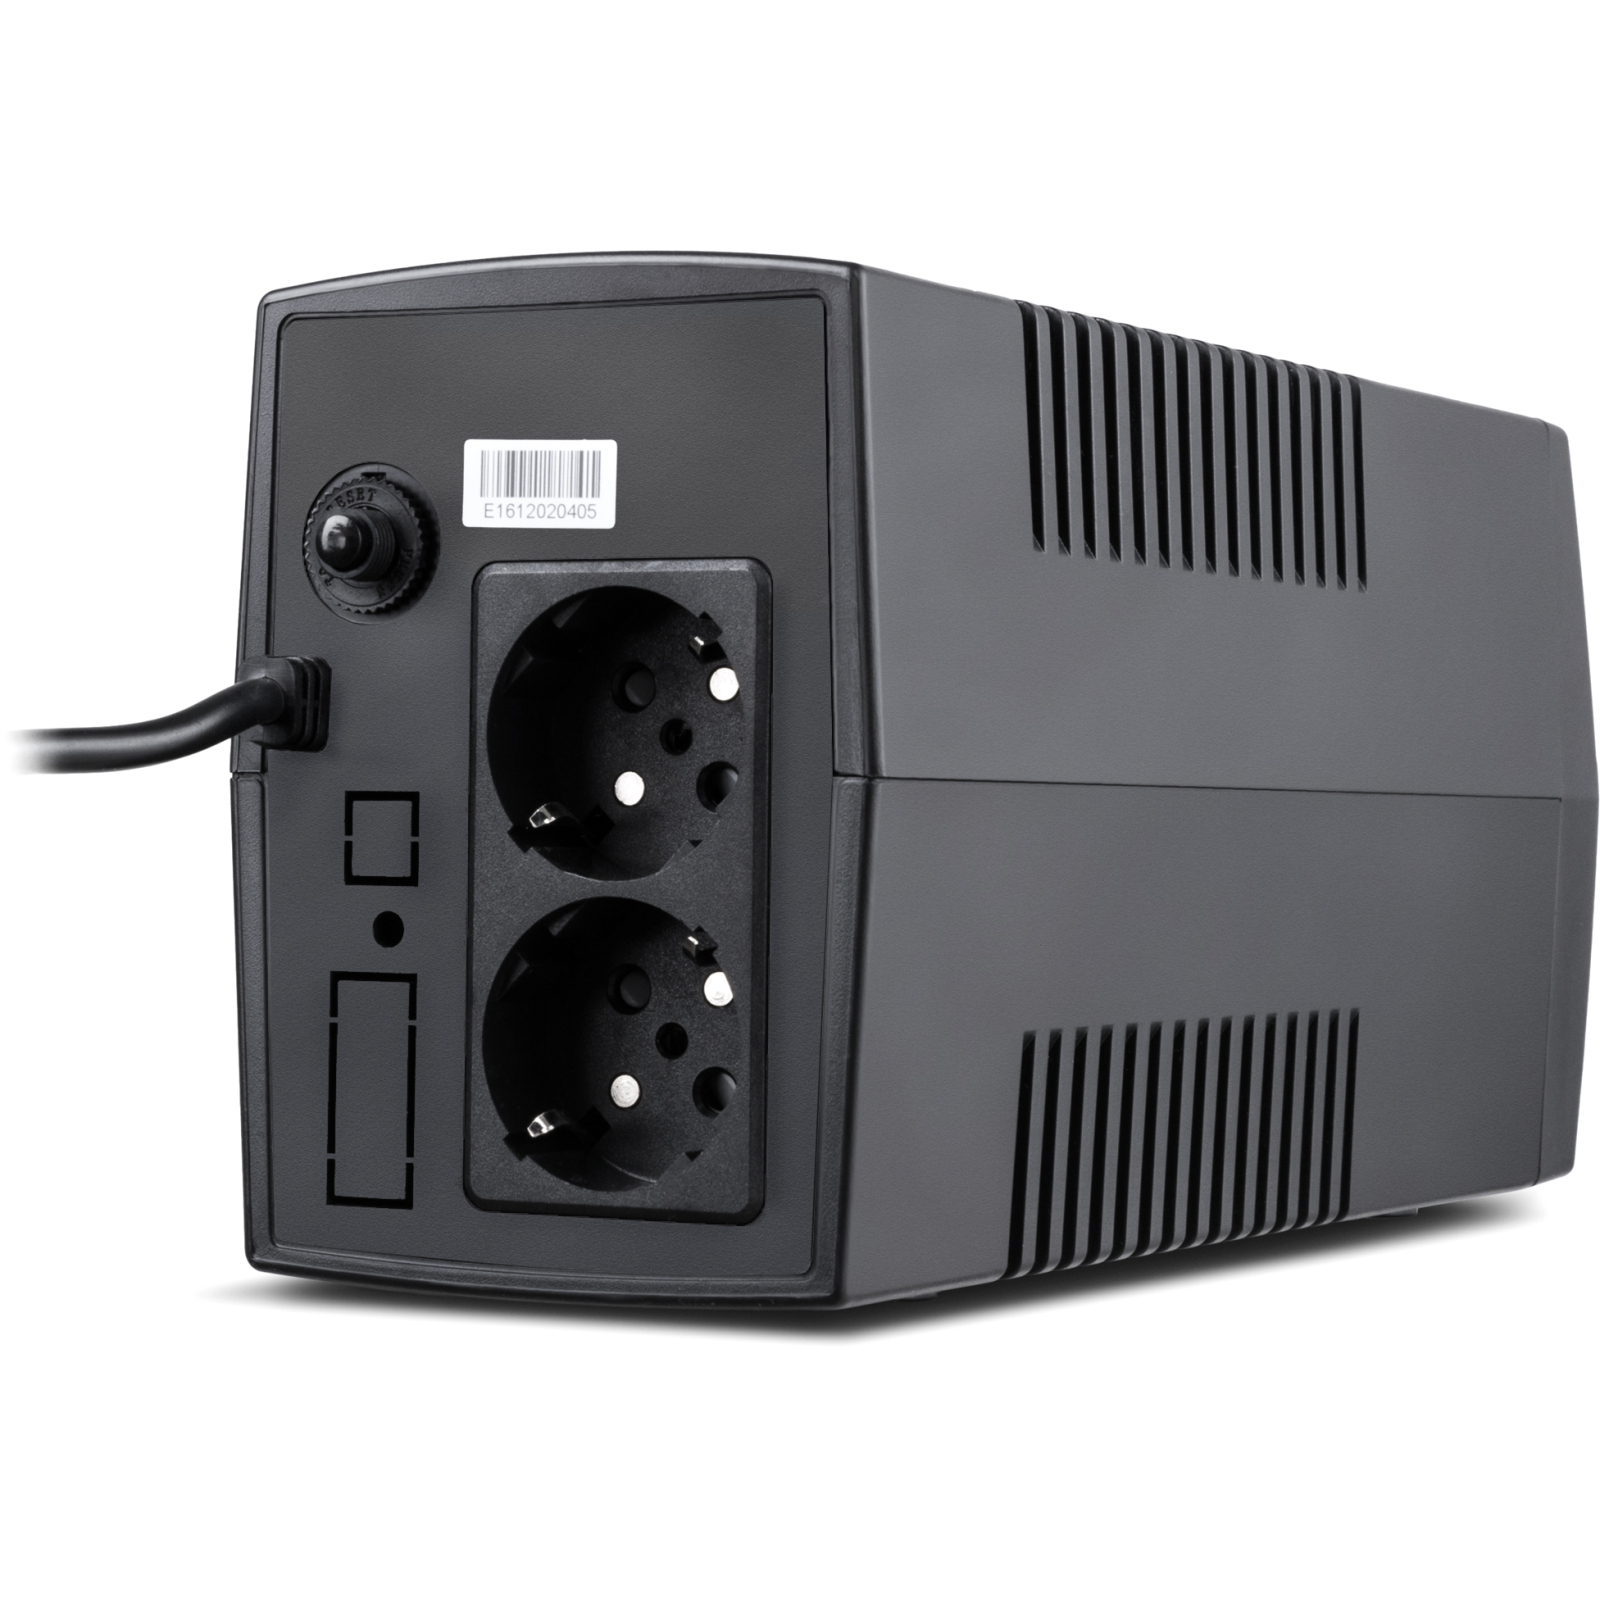 Пристрій безперебійного живлення Vinga LCD 800VA plastic case (VPC-800P) зображення 3